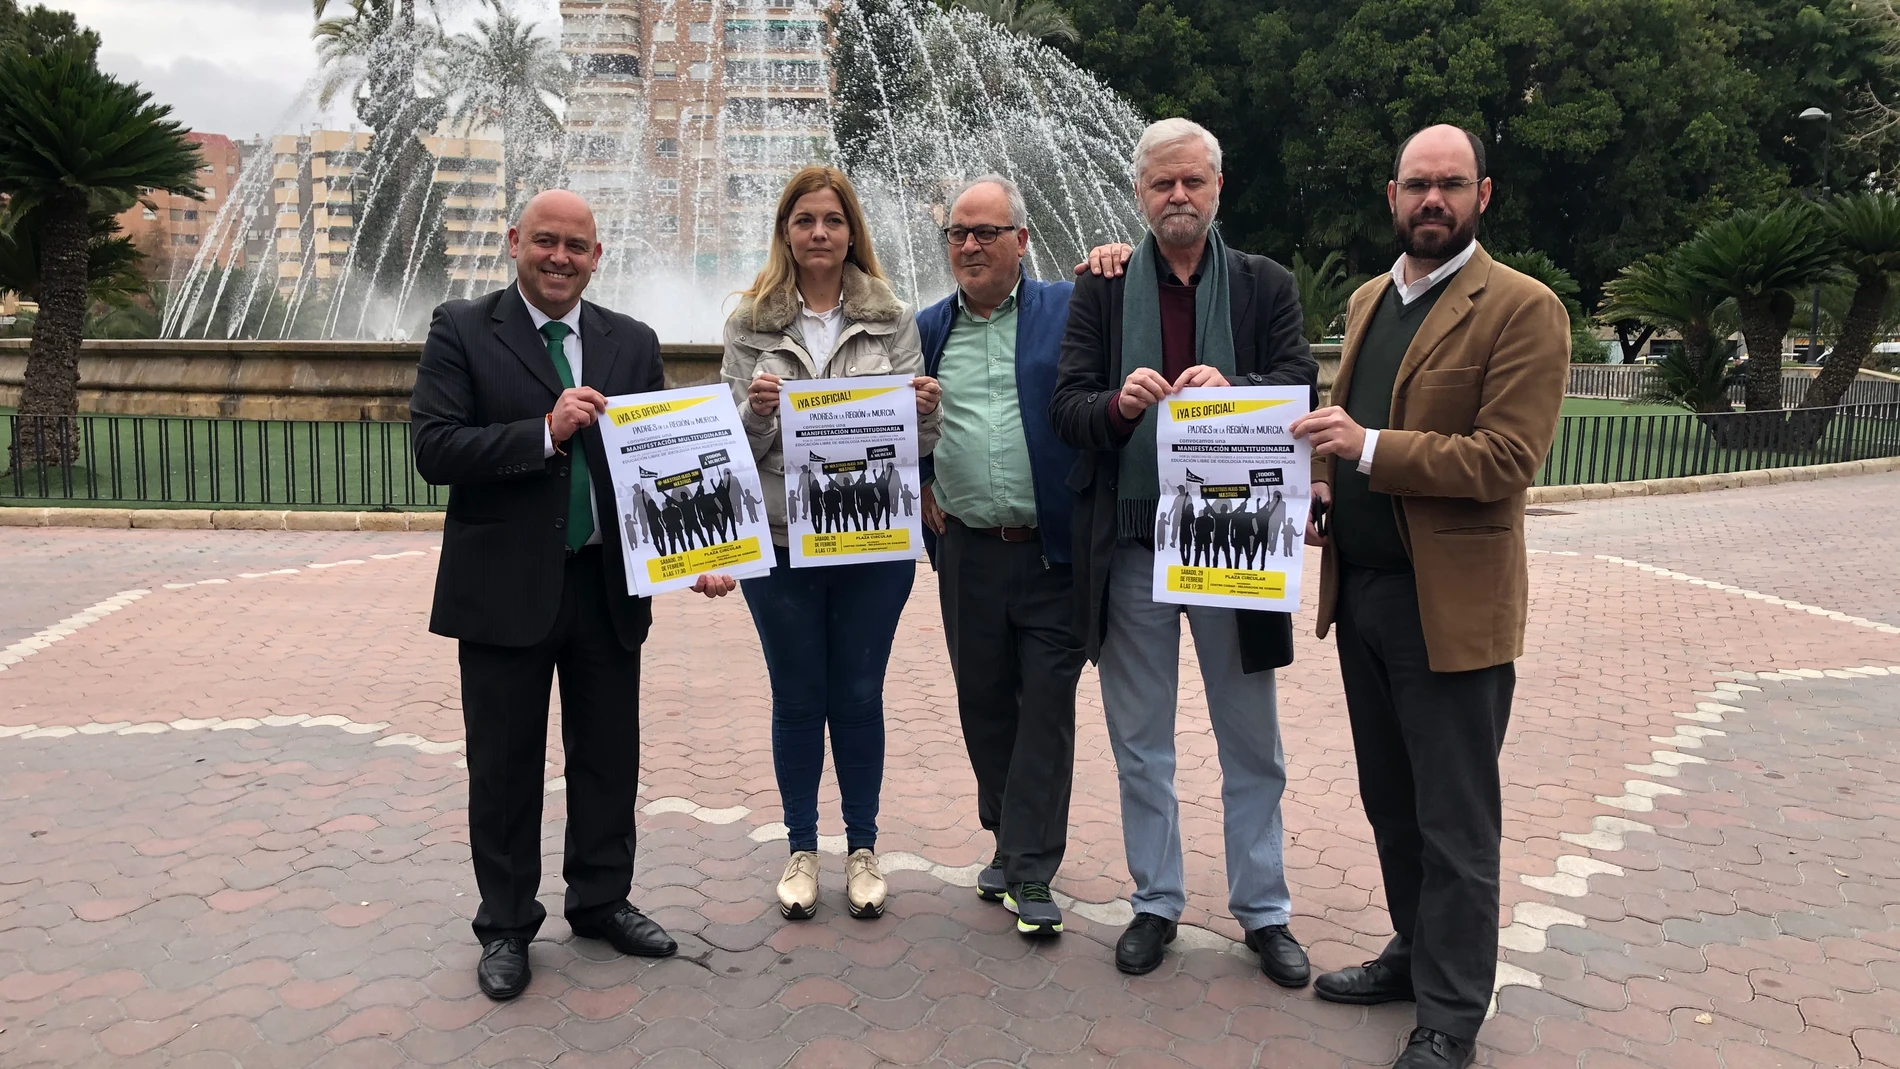 (AV) Convocan una manifestación en Murcia en defensa del 'pin parental' y para denunciar el adoctrinamiento en las aulas